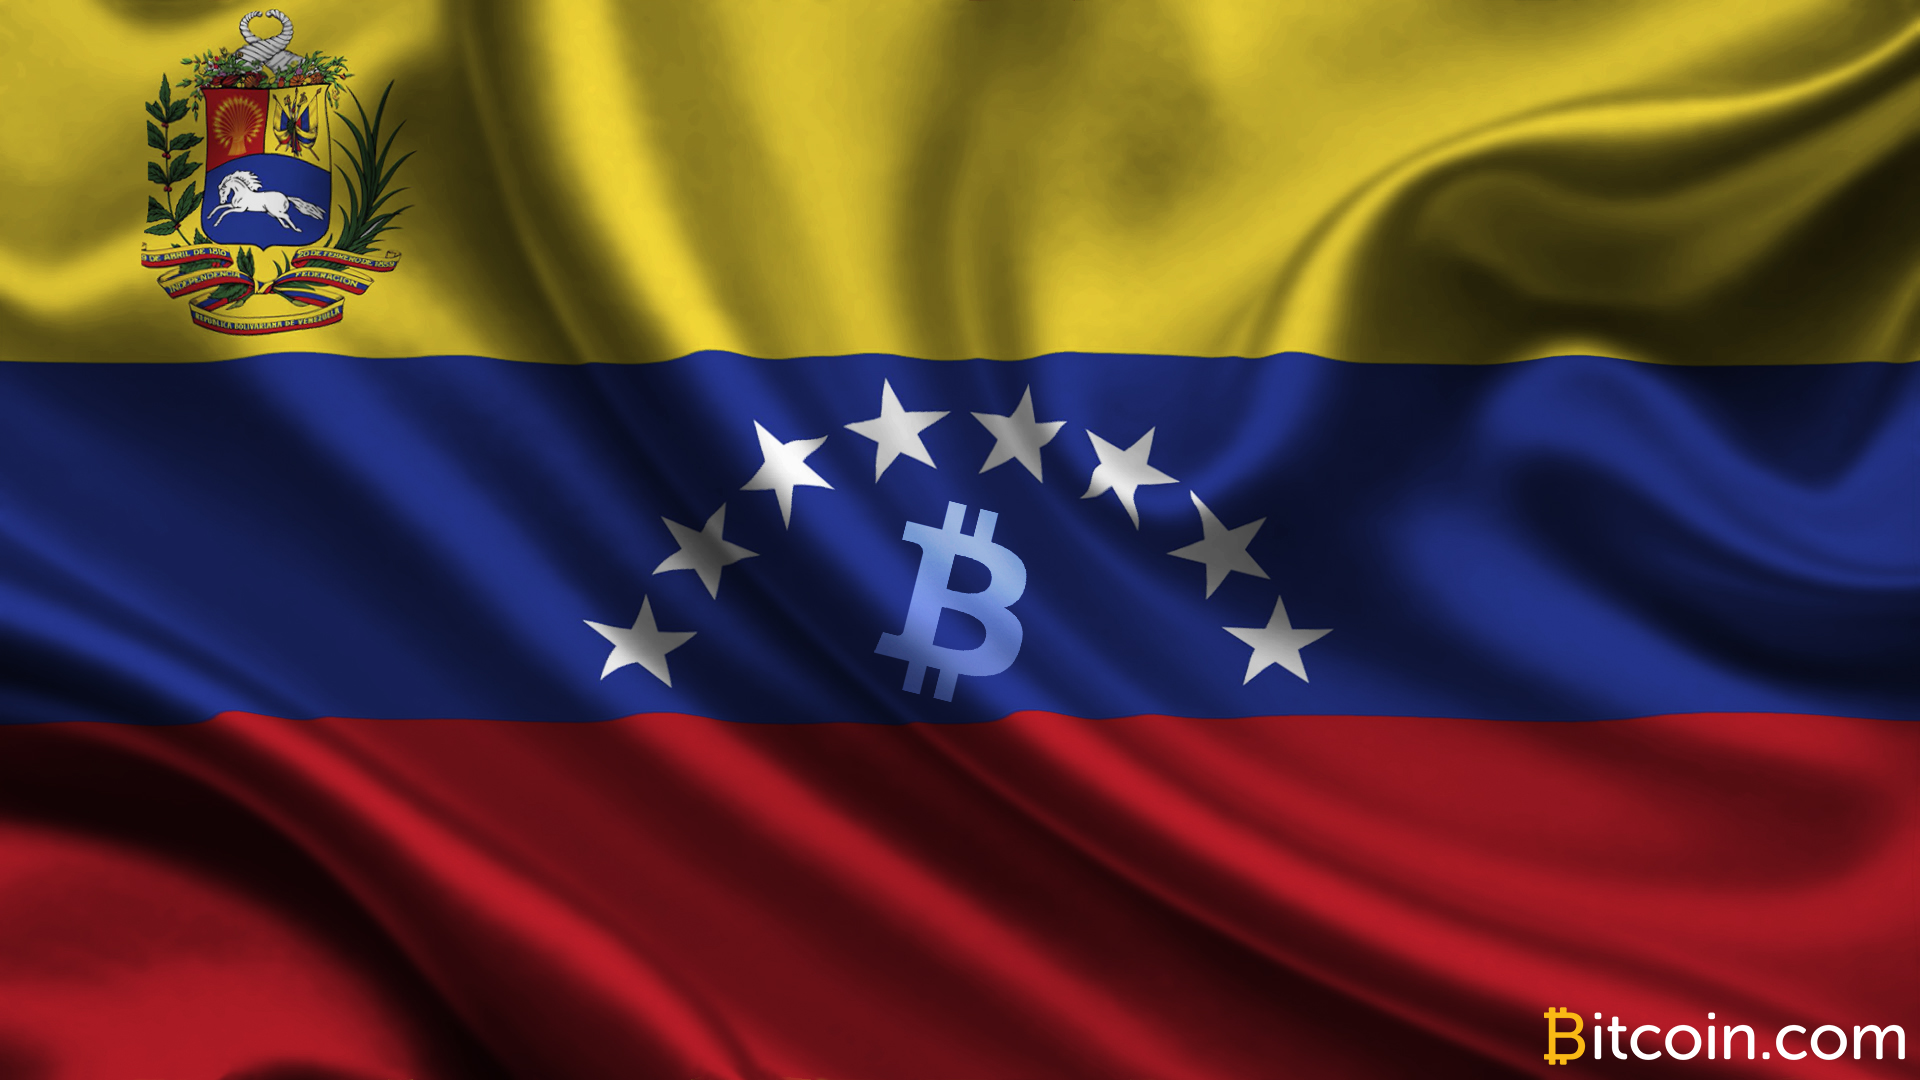 Bitcoin Goes into Hiding in Crisis-Stricken Venezuela